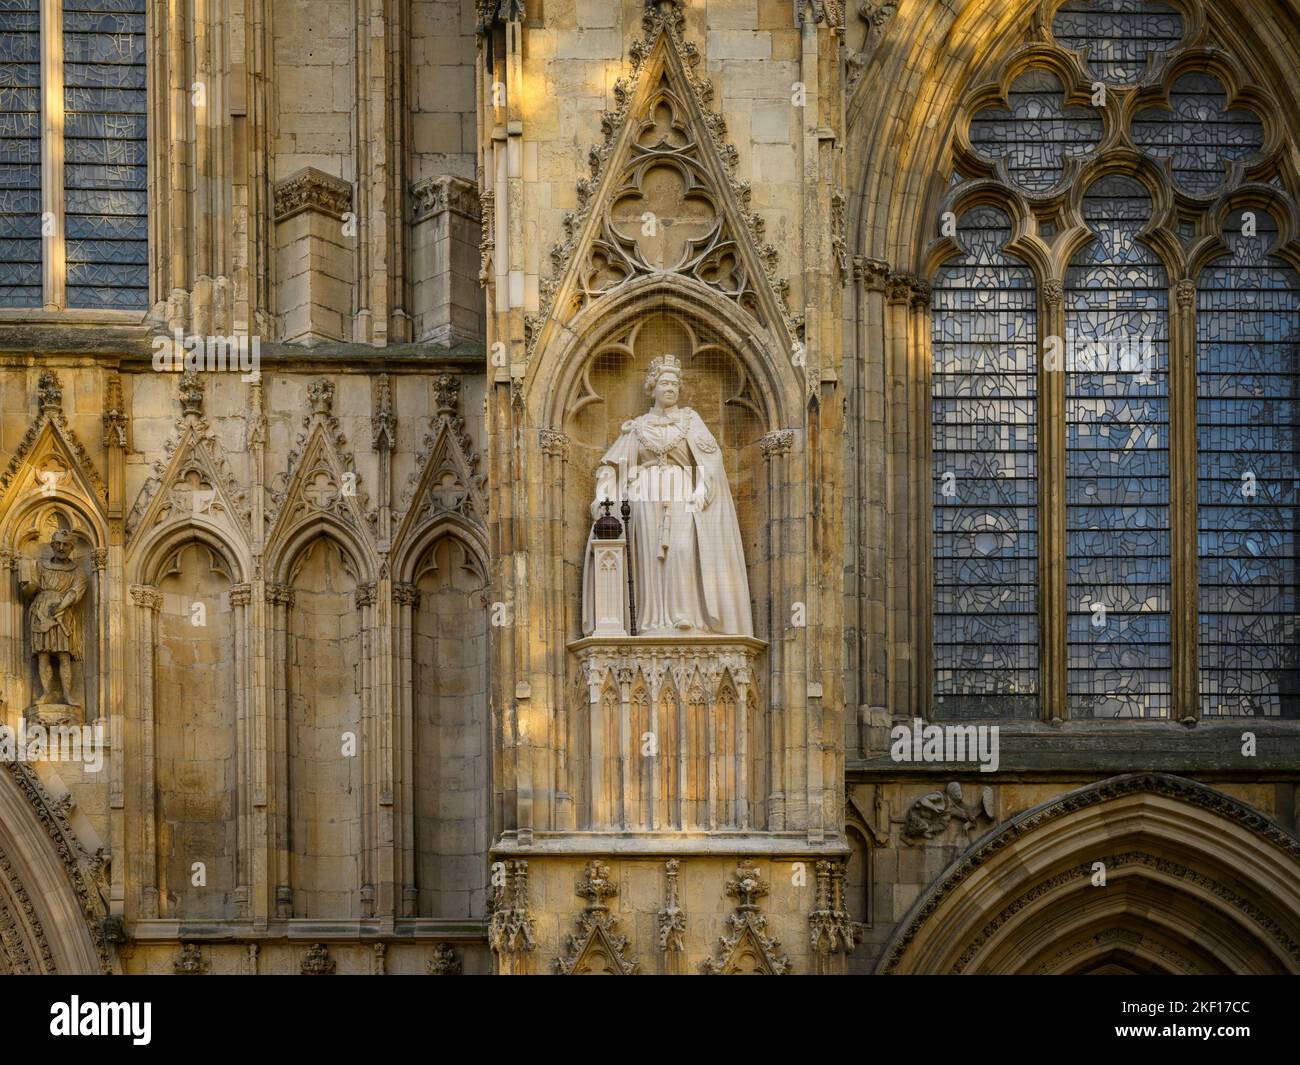 Elizabeth 2 statue de calcaire sur une niche haute portant une robe de cérémonie (orbe et sceptre) - face ouest, York Minster, North Yorkshire, Angleterre Royaume-Uni. Banque D'Images